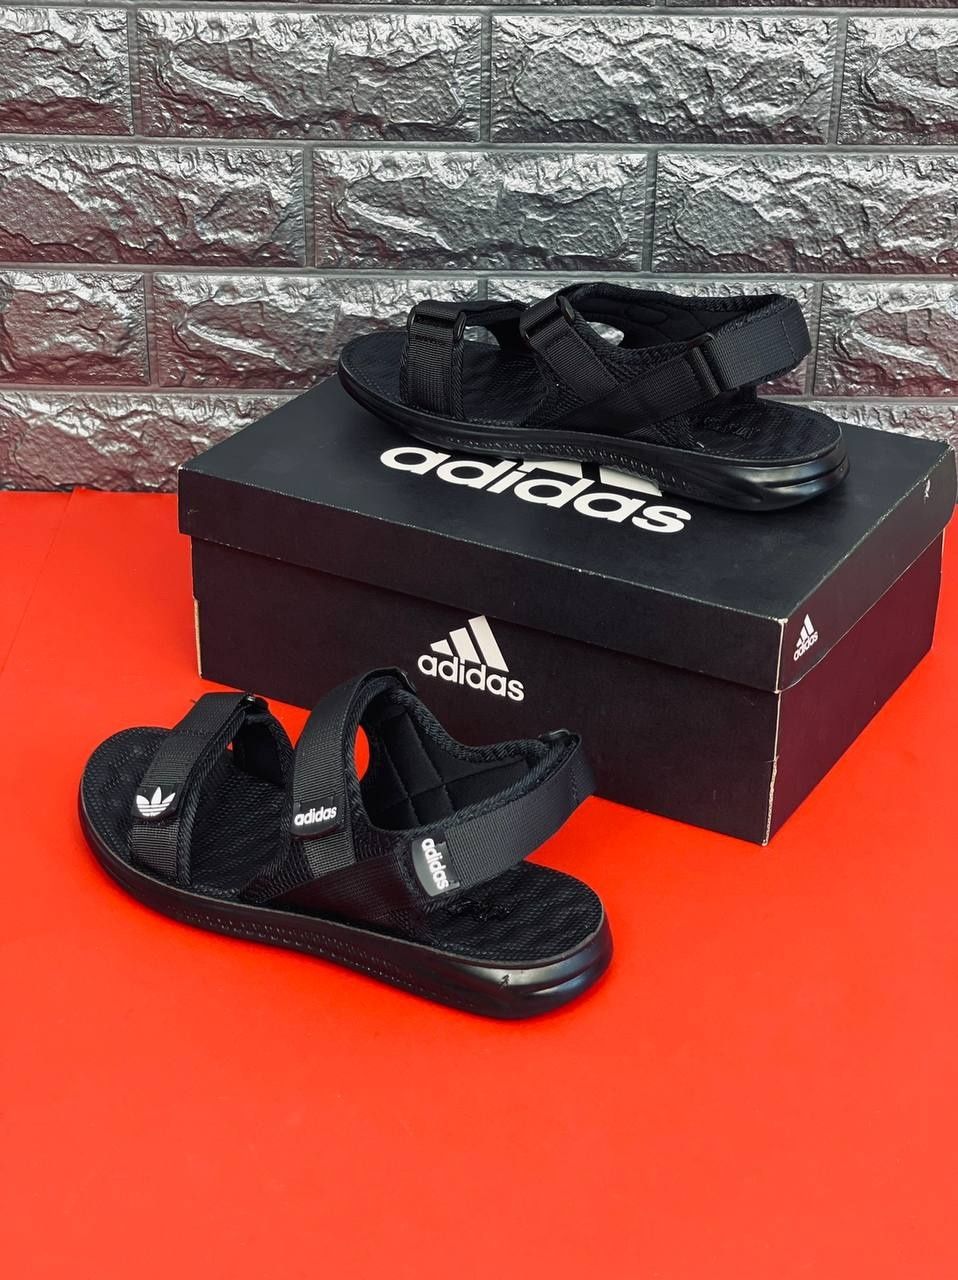 Мужские сандалии чёрного цвета Adidas 40-46